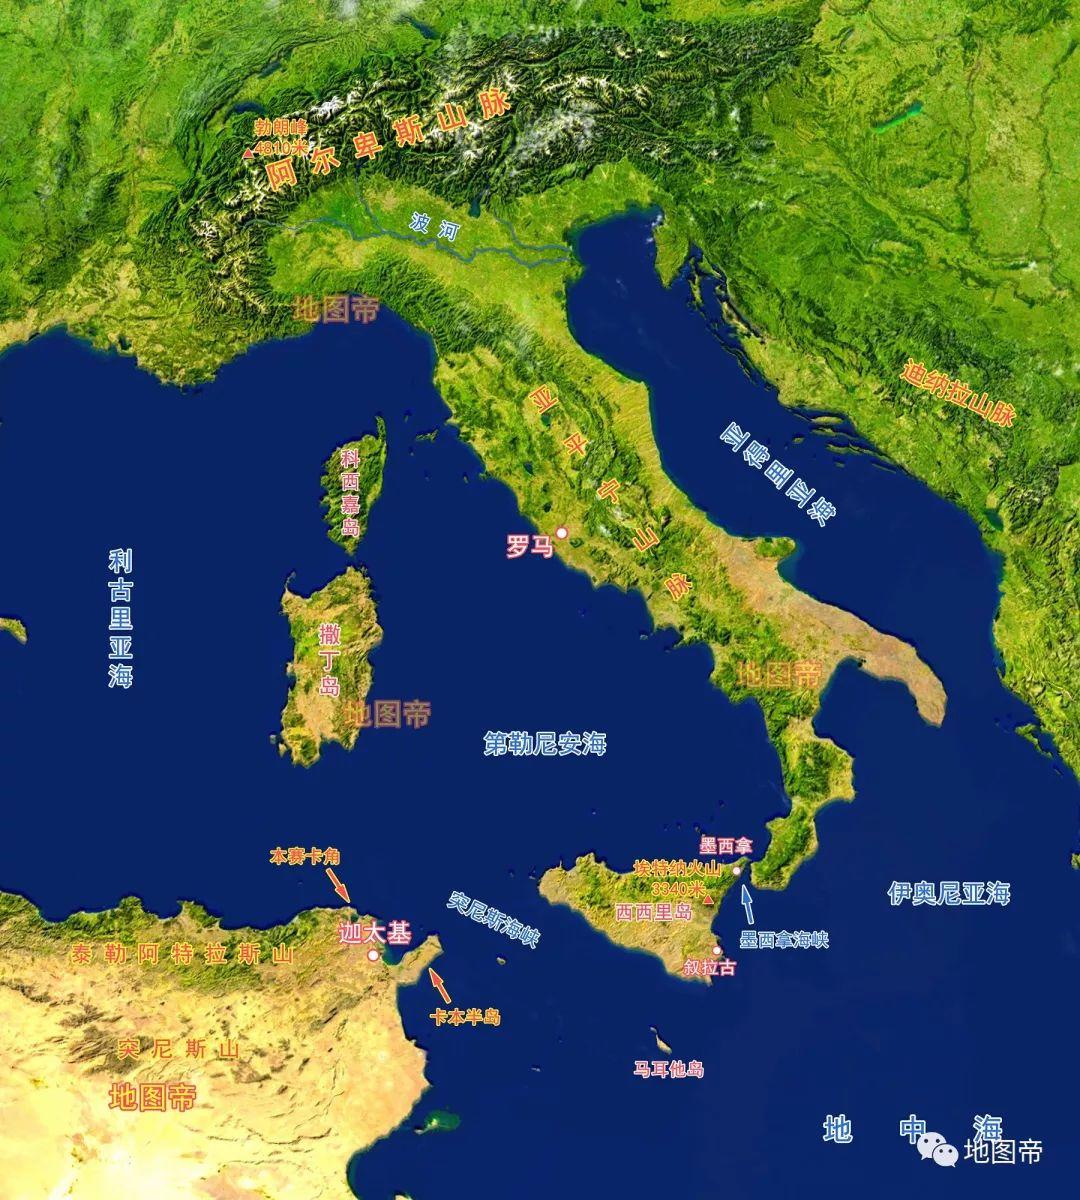 腓尼基是个航海民族,他们与地中海沿岸各民族贸易,从撒哈拉以南运来大